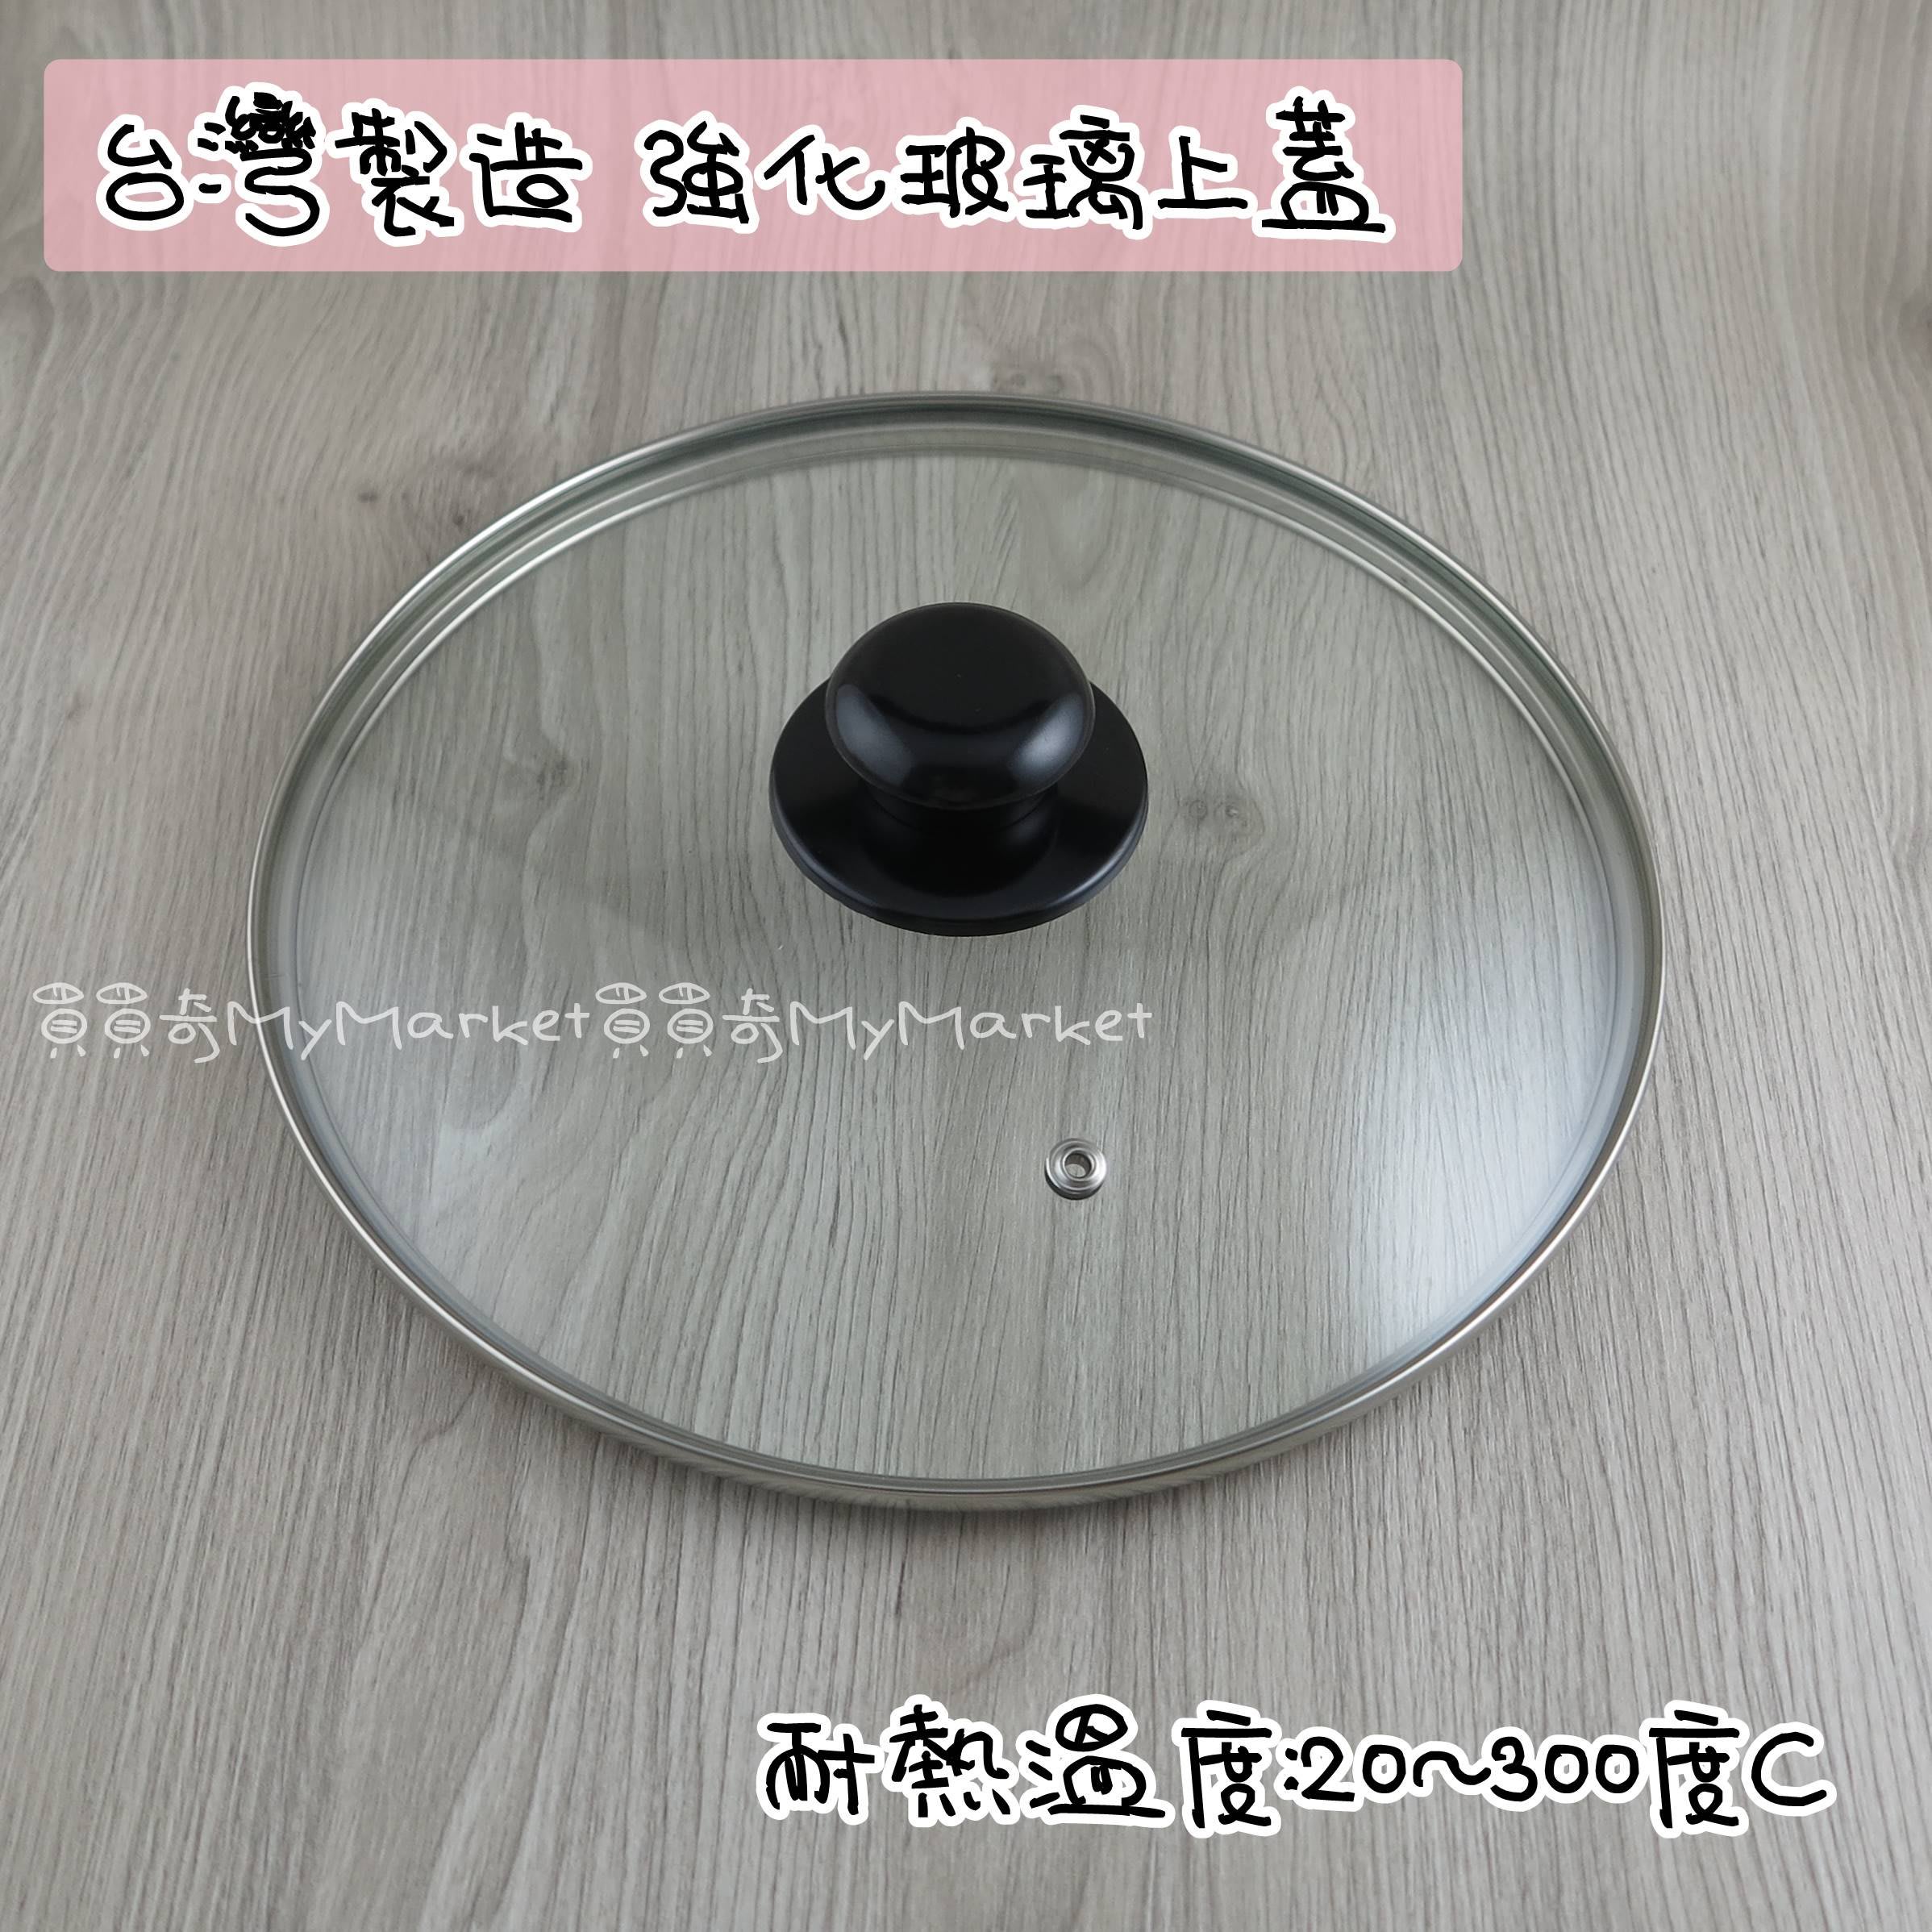 台灣製強化玻璃蓋鍋蓋22cm 透氣孔 不鏽鋼框 玻璃蓋玻璃上蓋透明鍋蓋